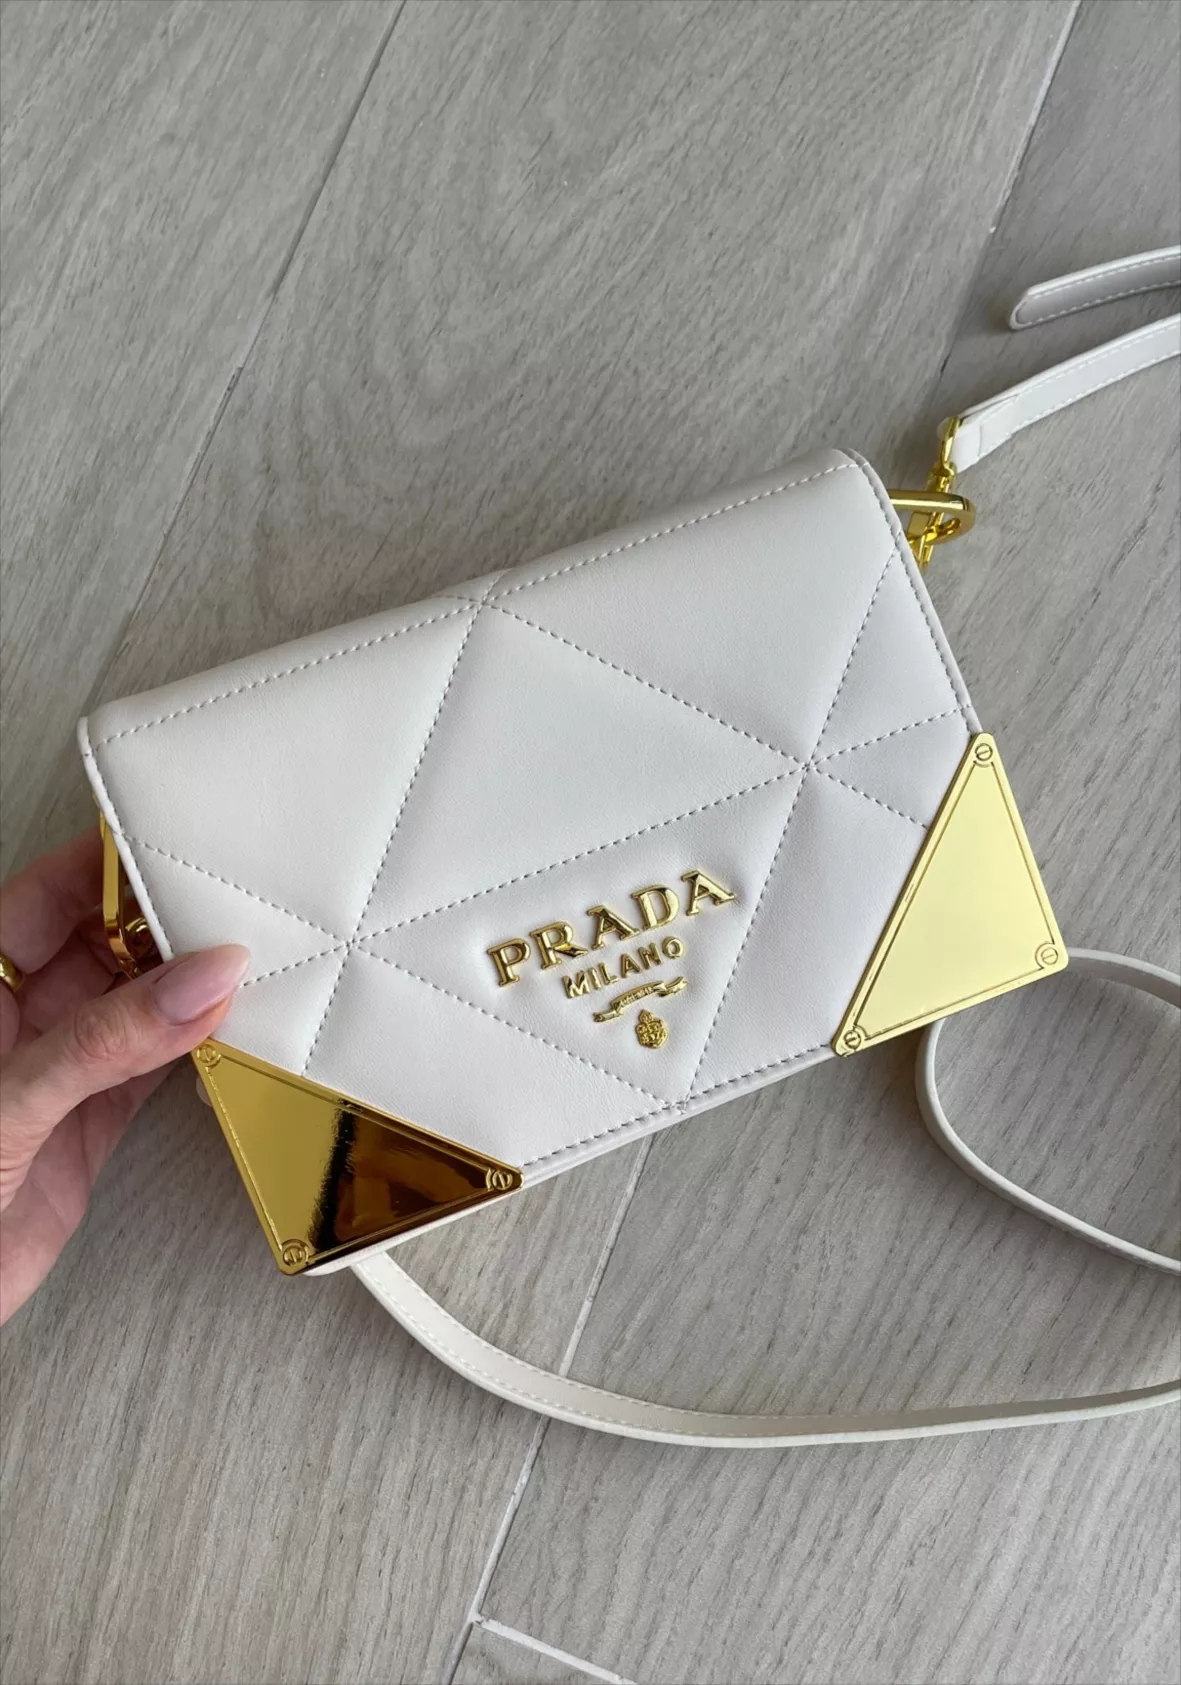 Prada envelope style wallet-on-chain - White